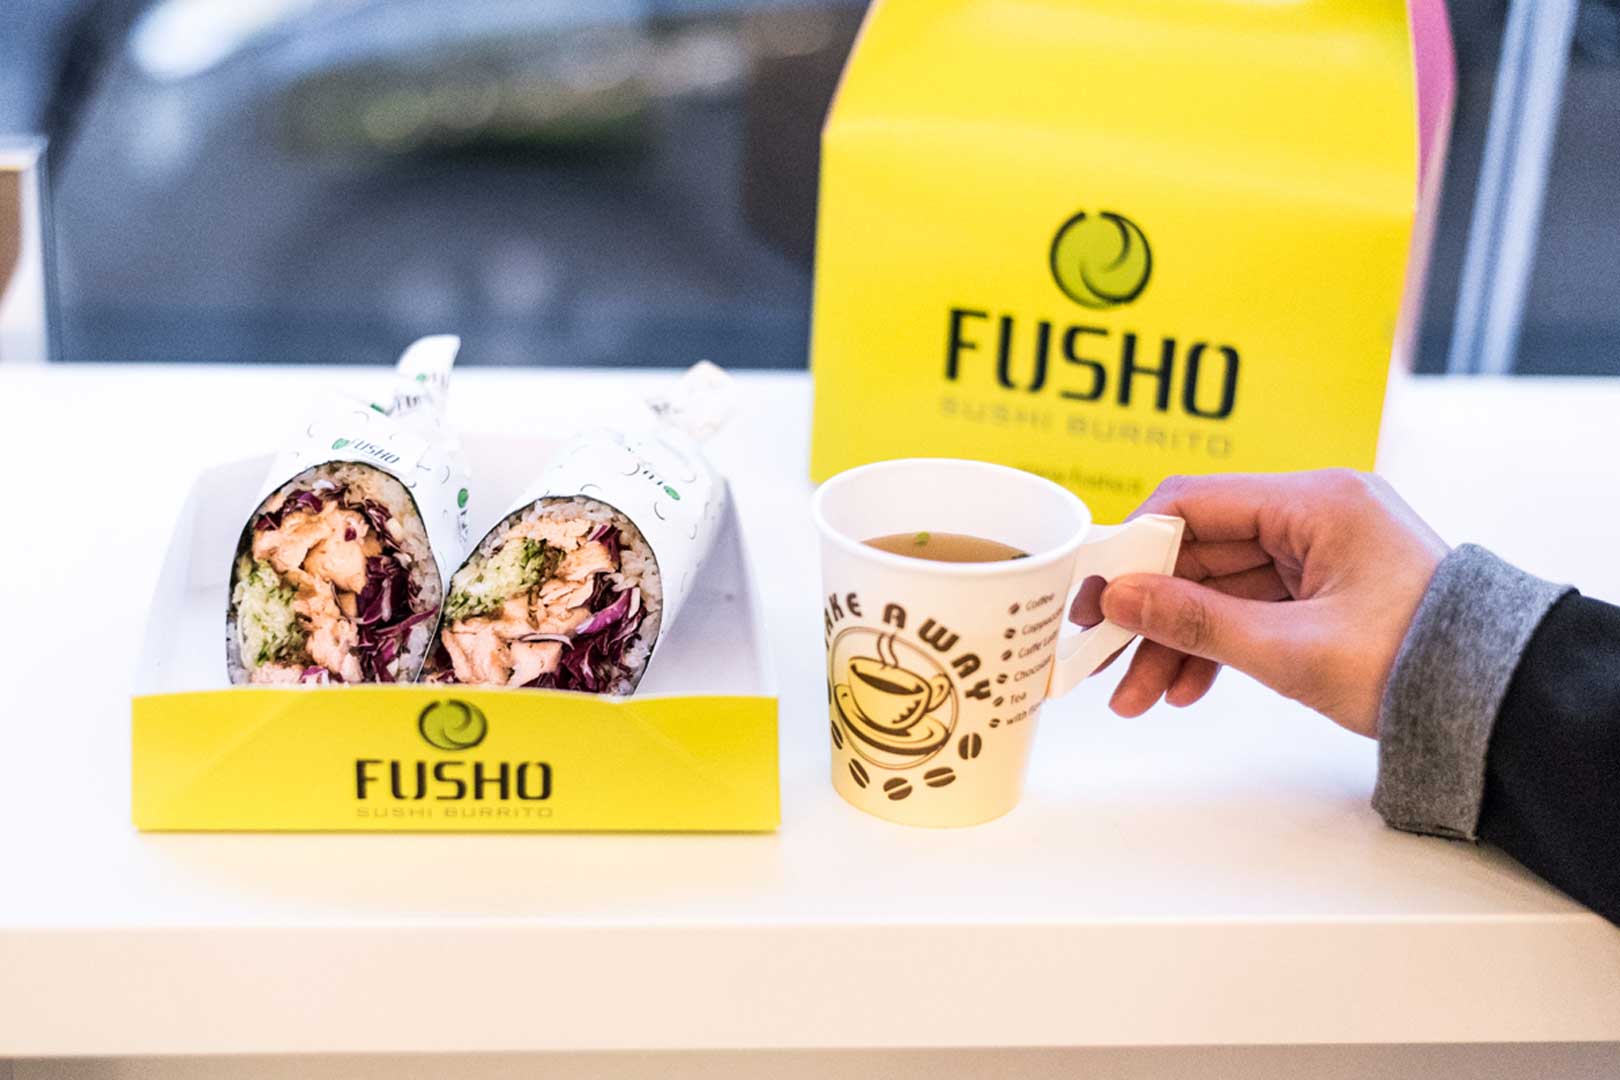 Fusho Sushi Burrito - Milano